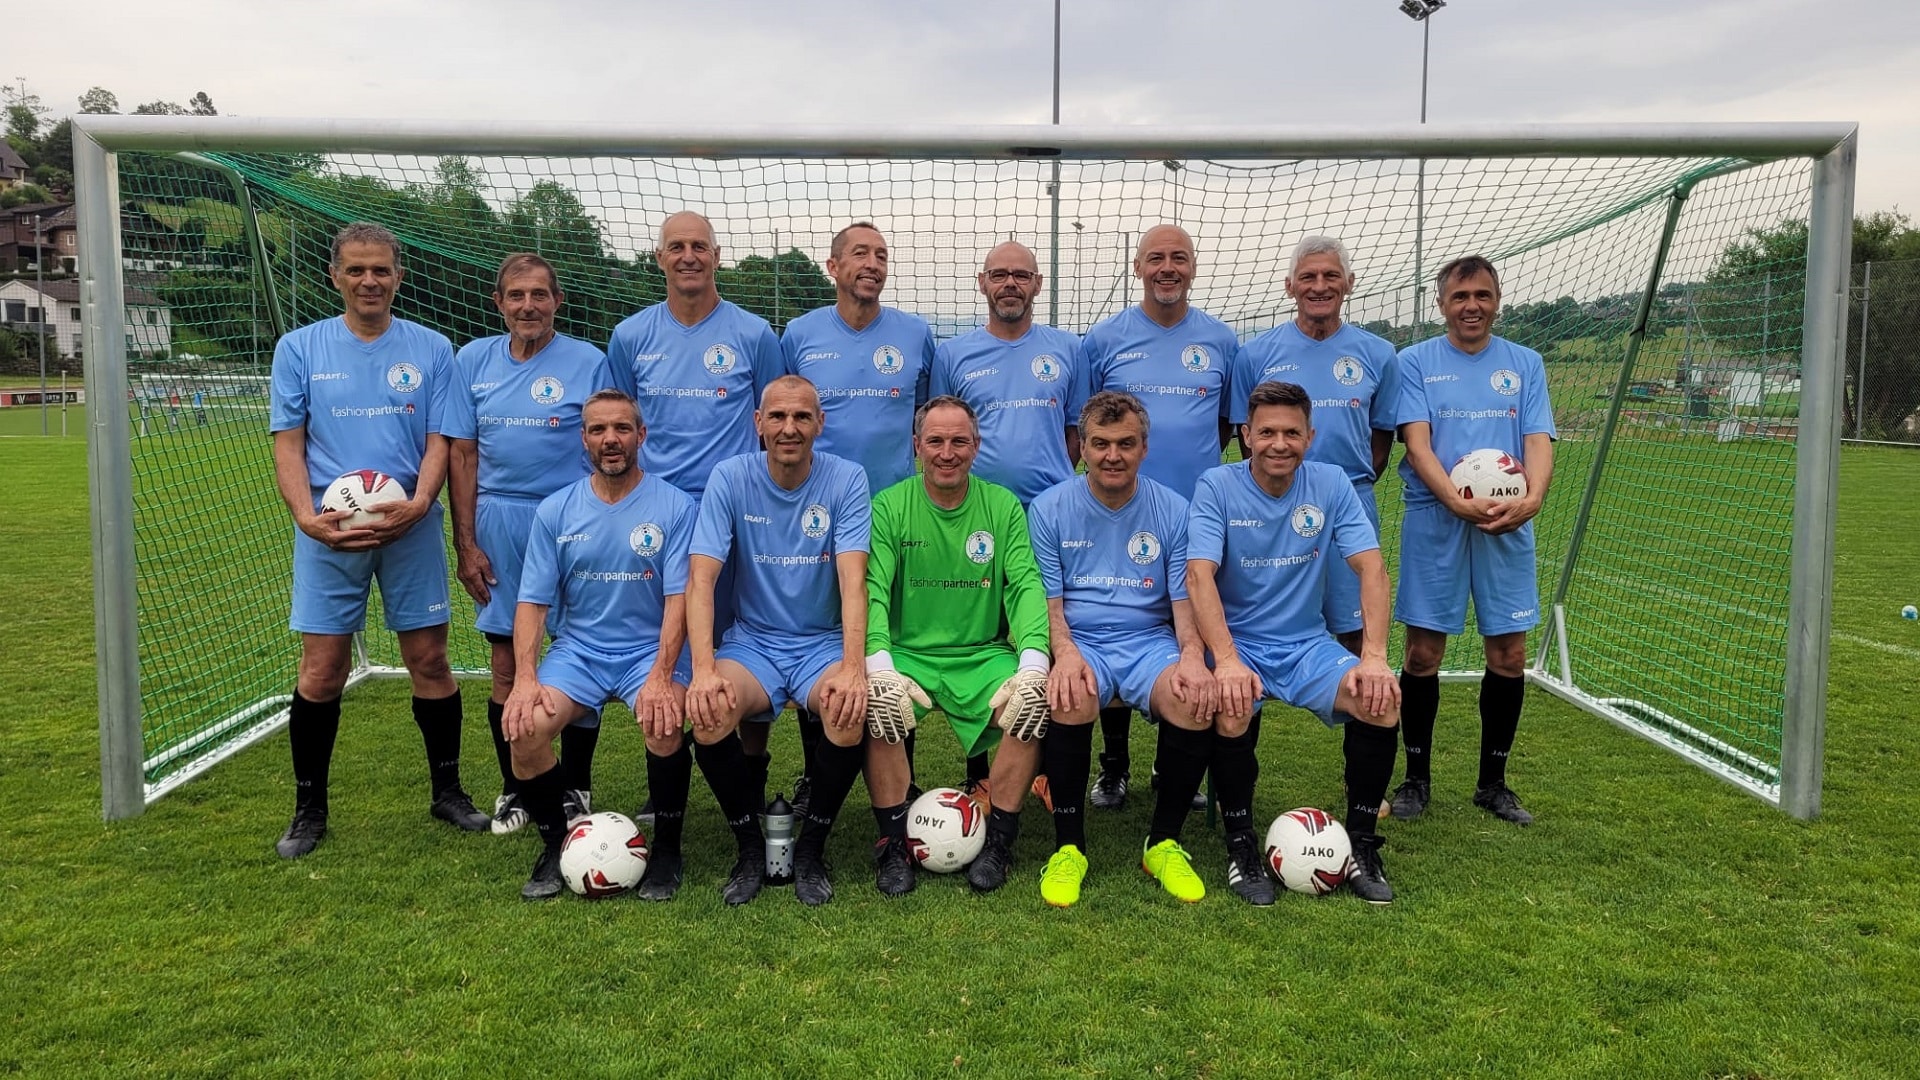 FC Staad Ü50 krönt Saison mit Ostschweizer Meistertitel - gwüsst